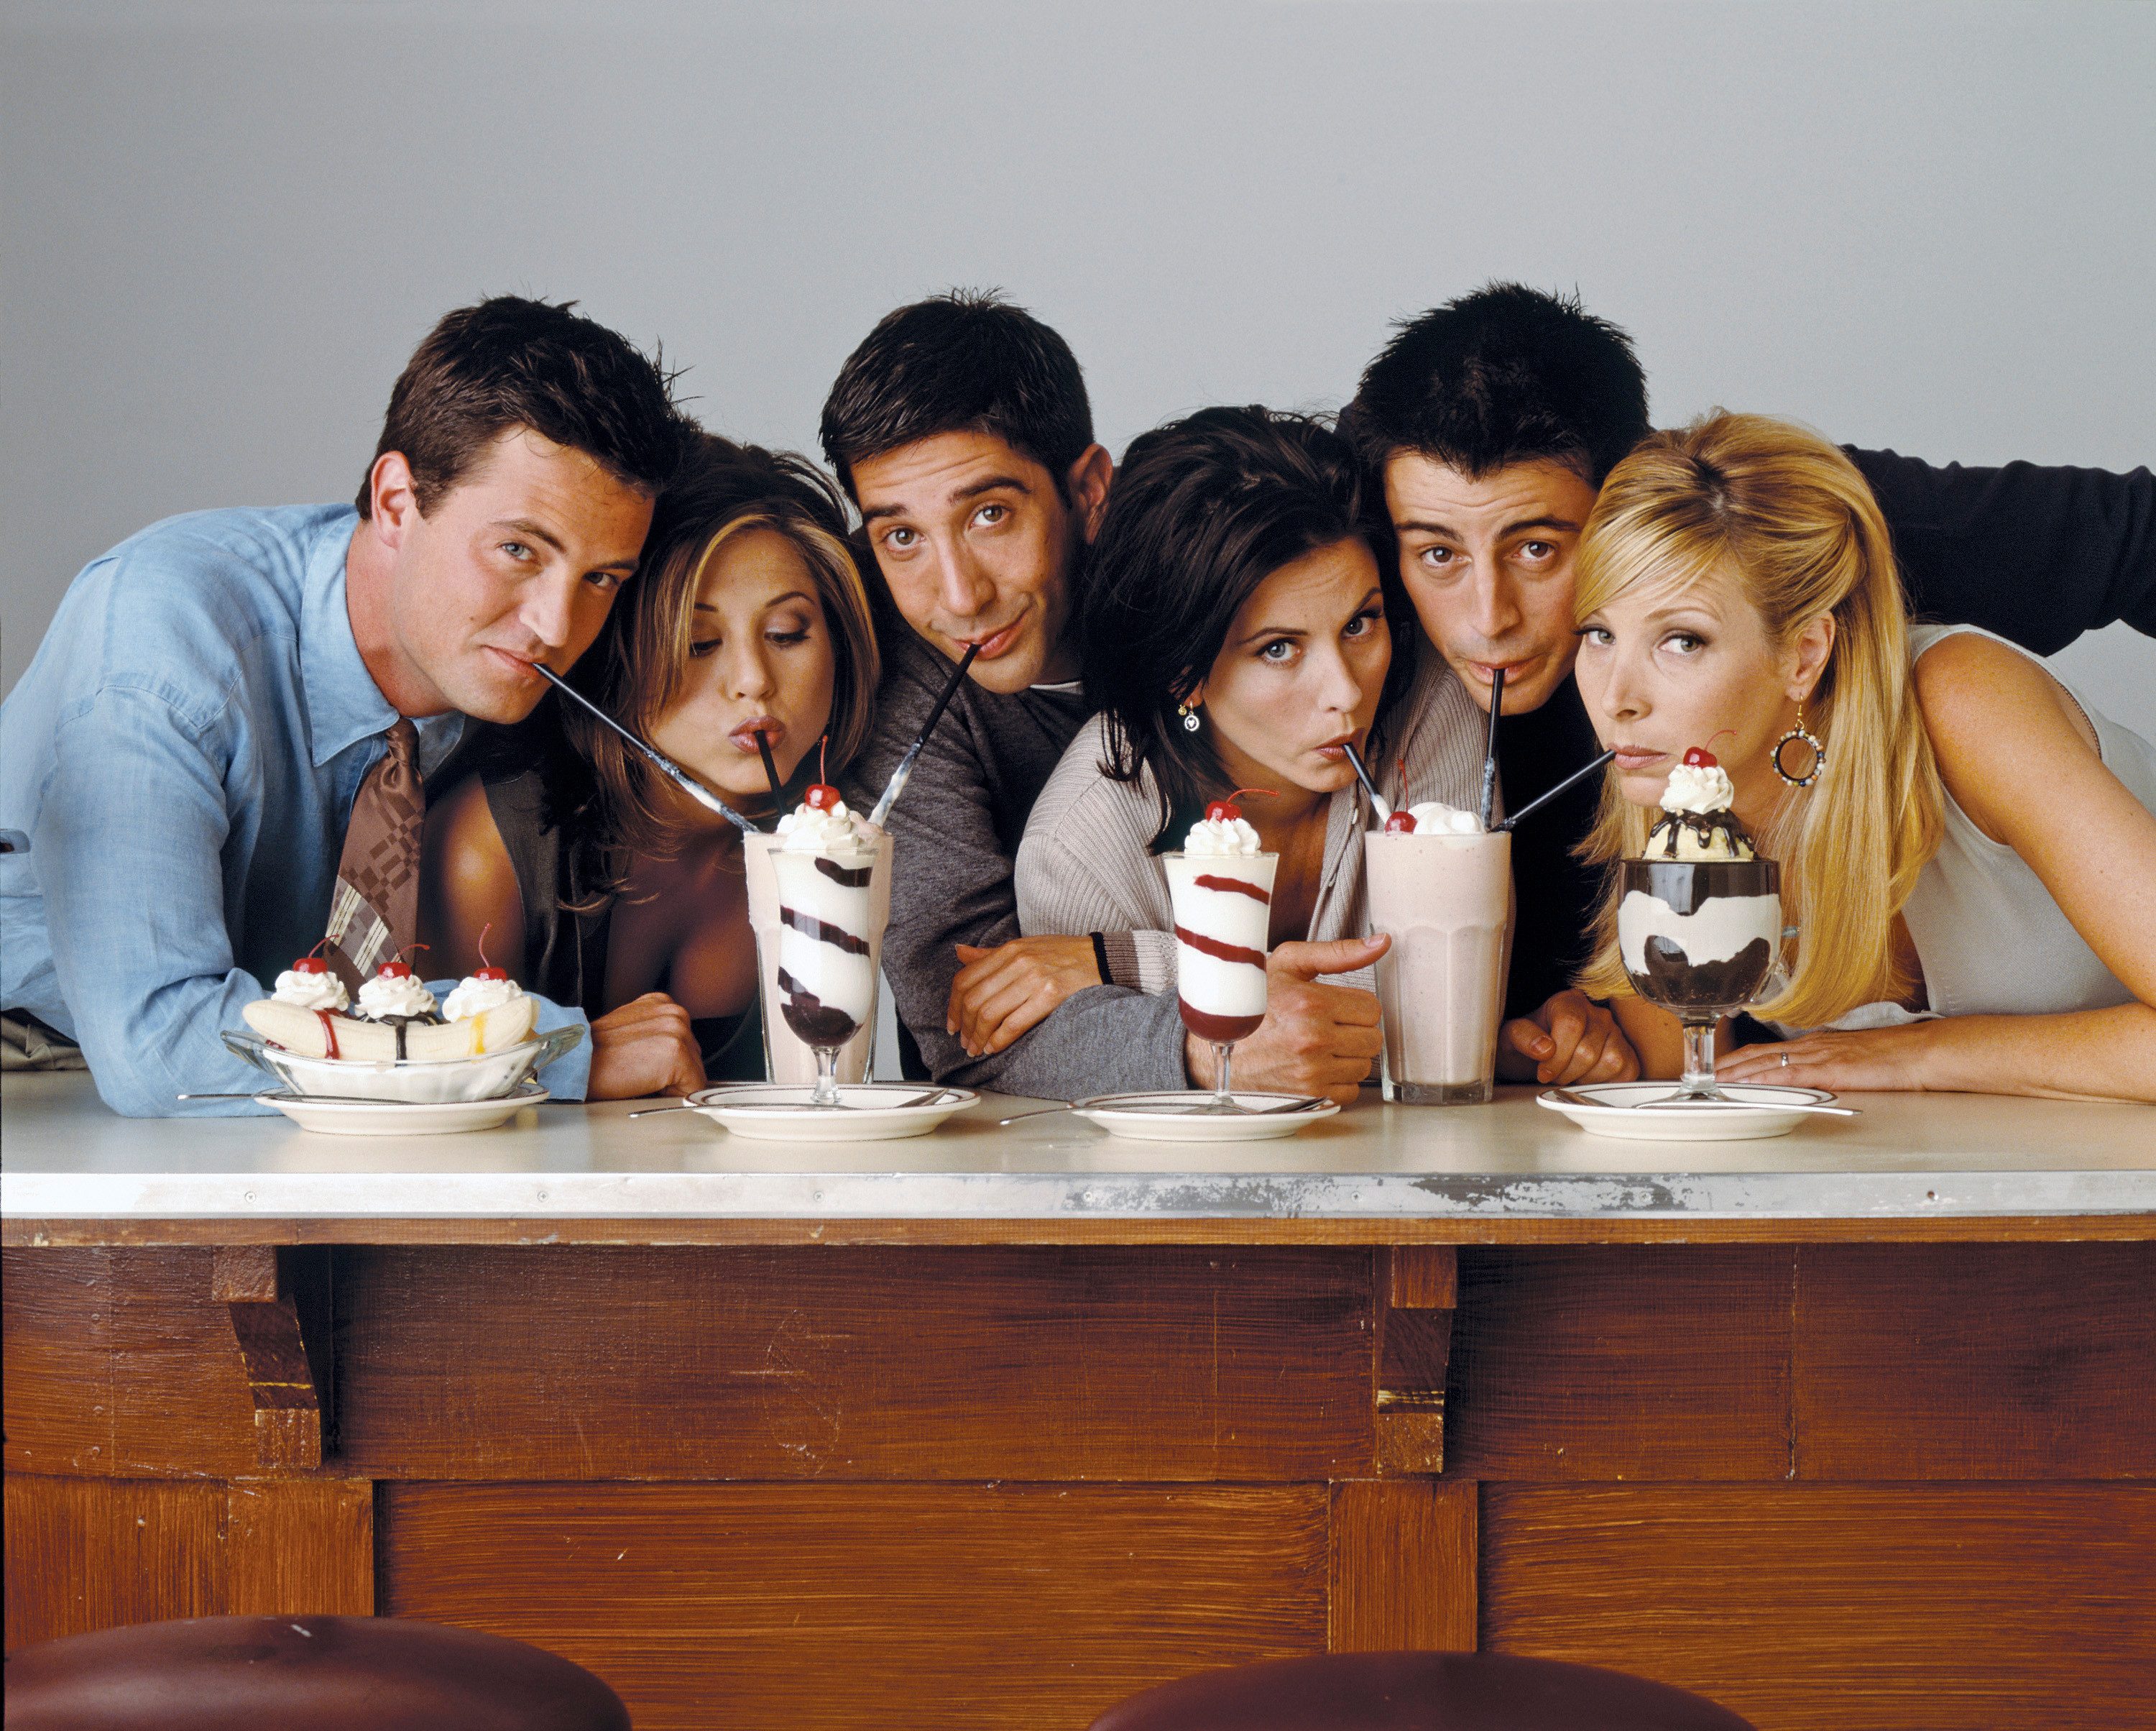 مسلسل Friends الذي لايزال إلى اليوم يحقق عائدات مدهشة حقائق لم تكن تعرفها عربي بوست